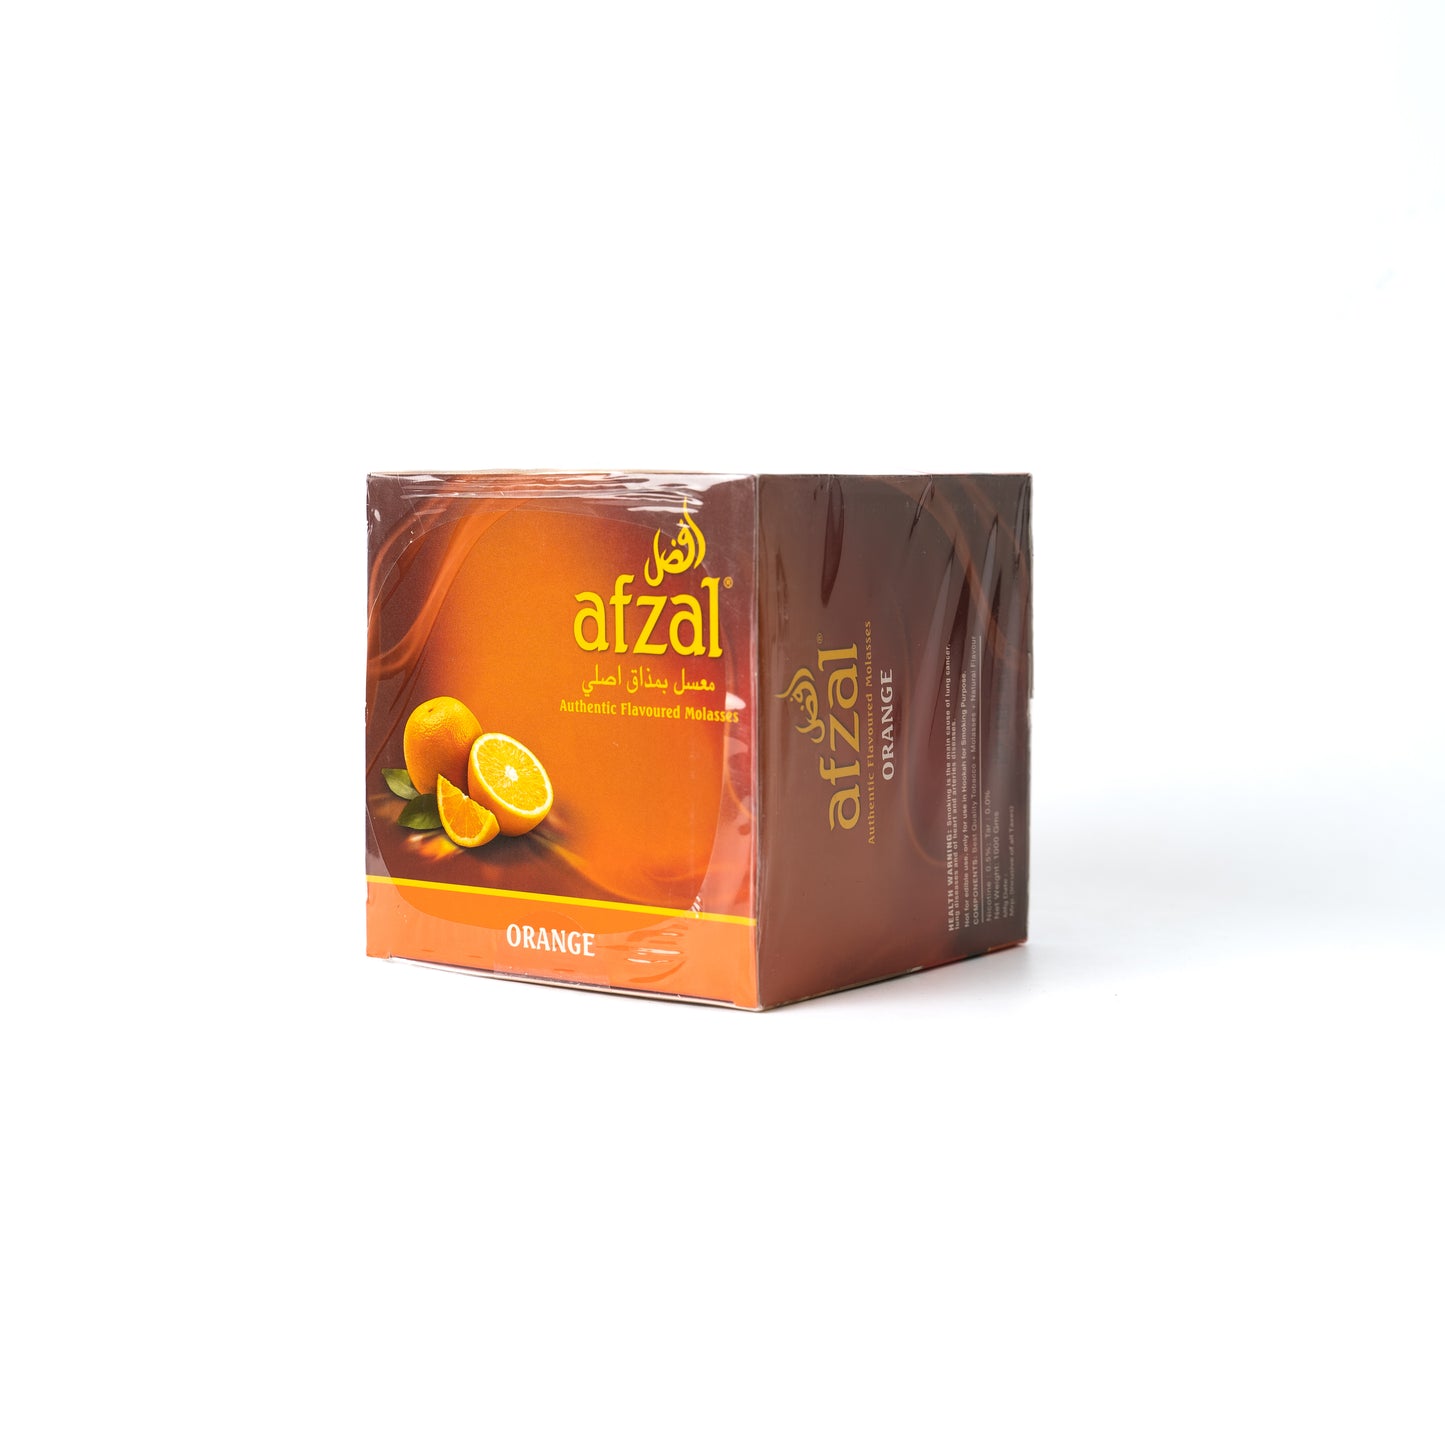 Afzal Orange Hookah Flavor - 1kg Bucket